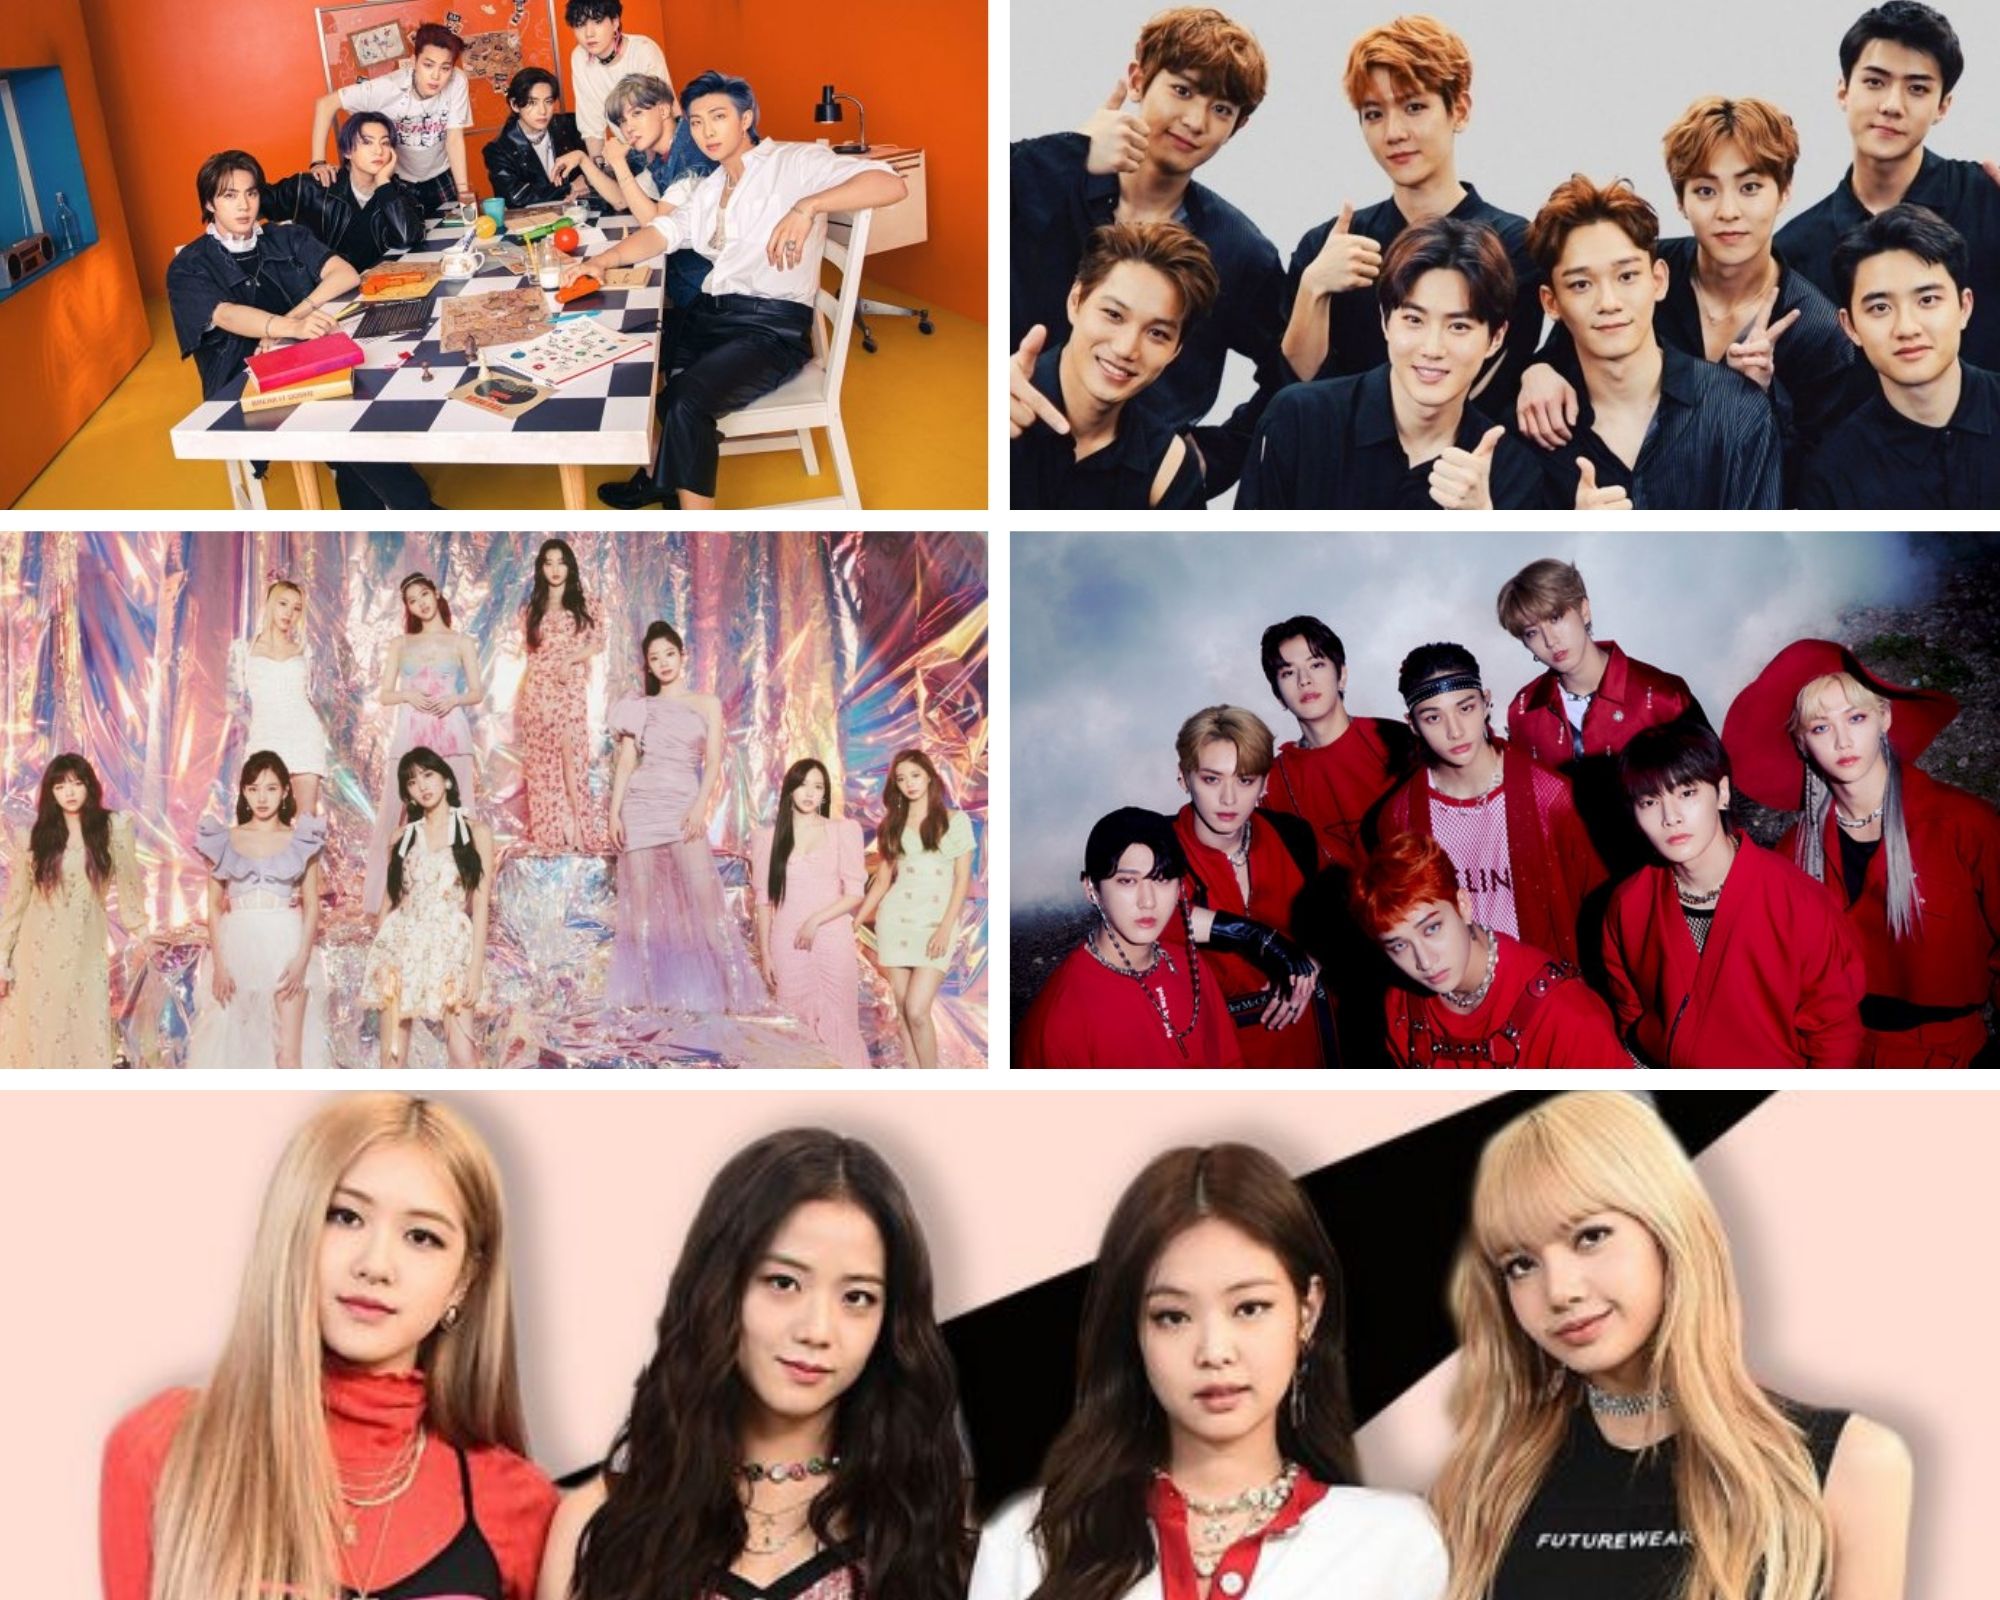 Top 5 most followed K-pop artists on Spotify in 2023